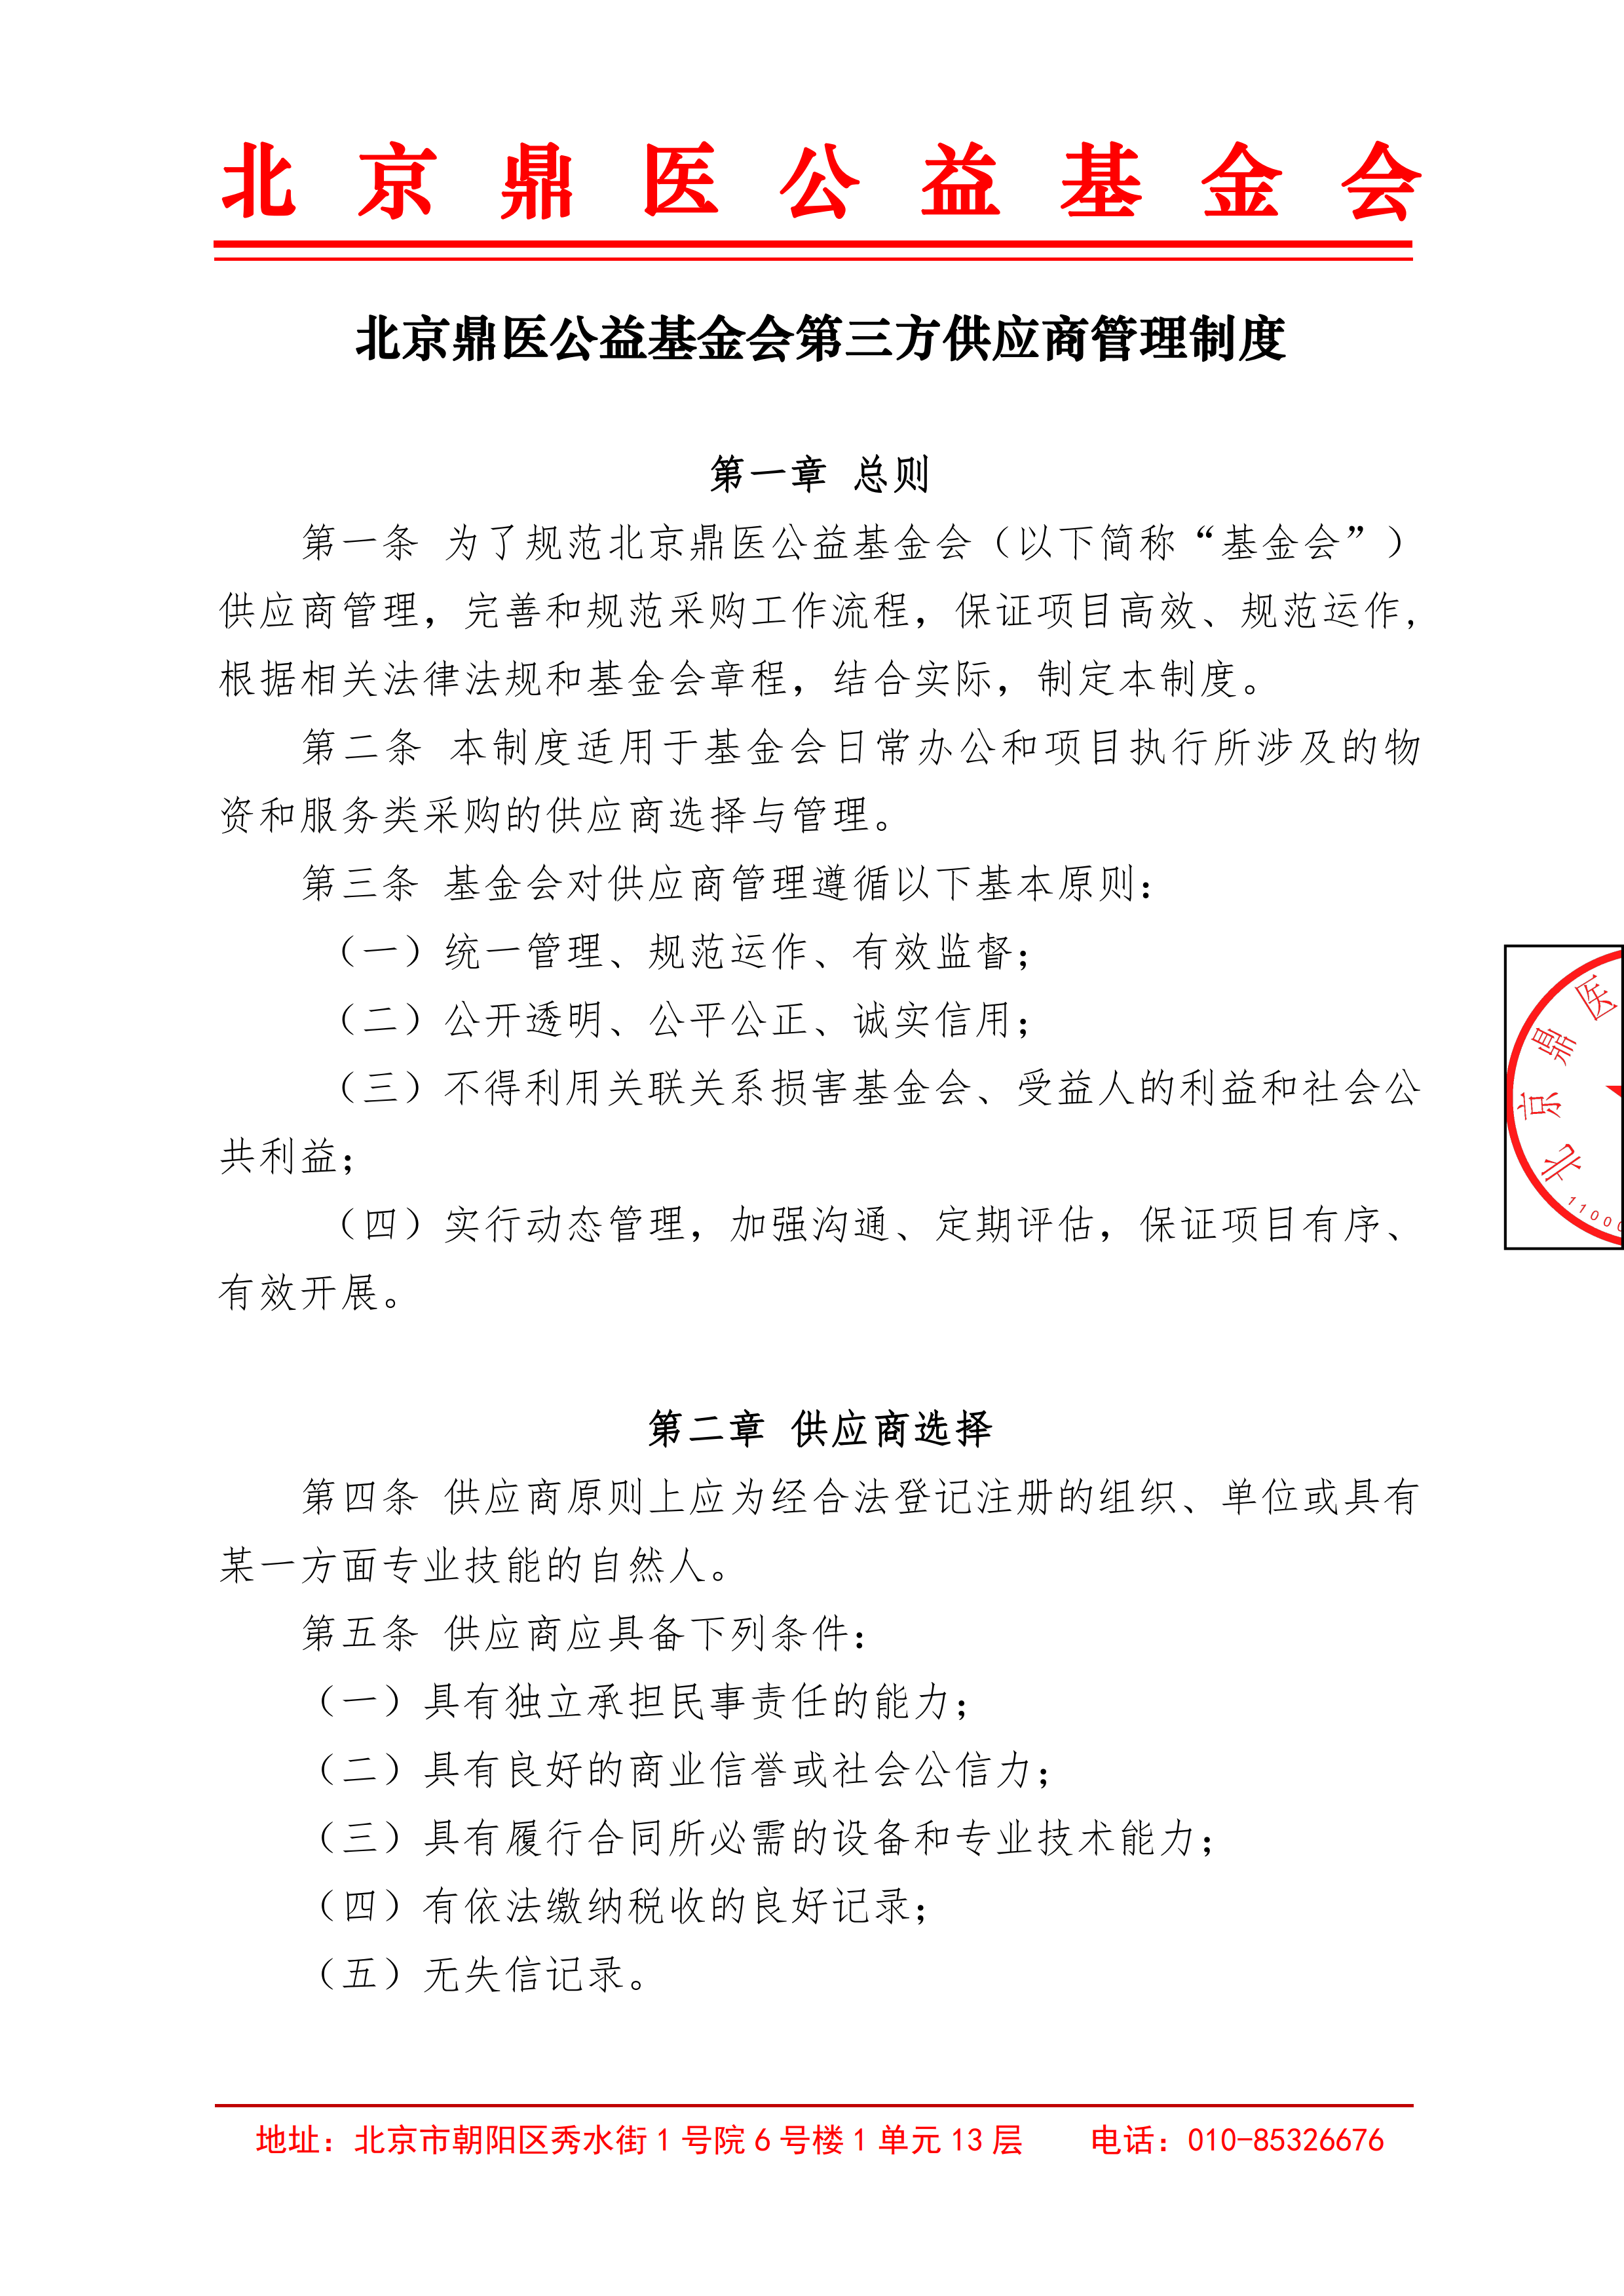 北京鼎医公益基金会第三方供应商管理制度1